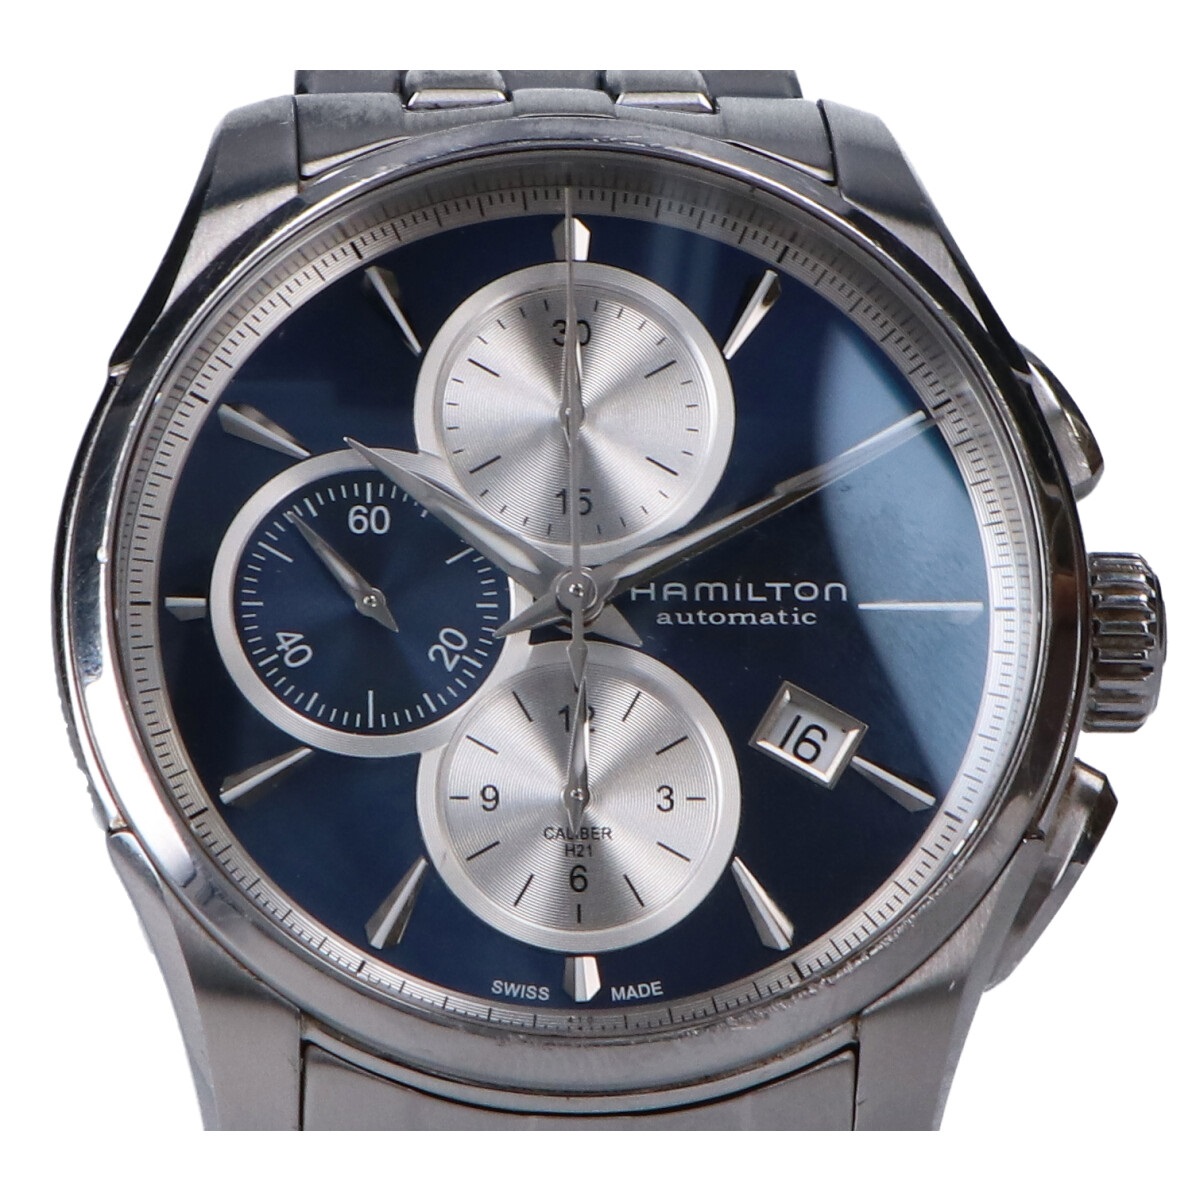 ハミルトンのH32596141 ジャズマスター Auto Chrono シースルーバック 自動巻き 腕時計の買取実績です。